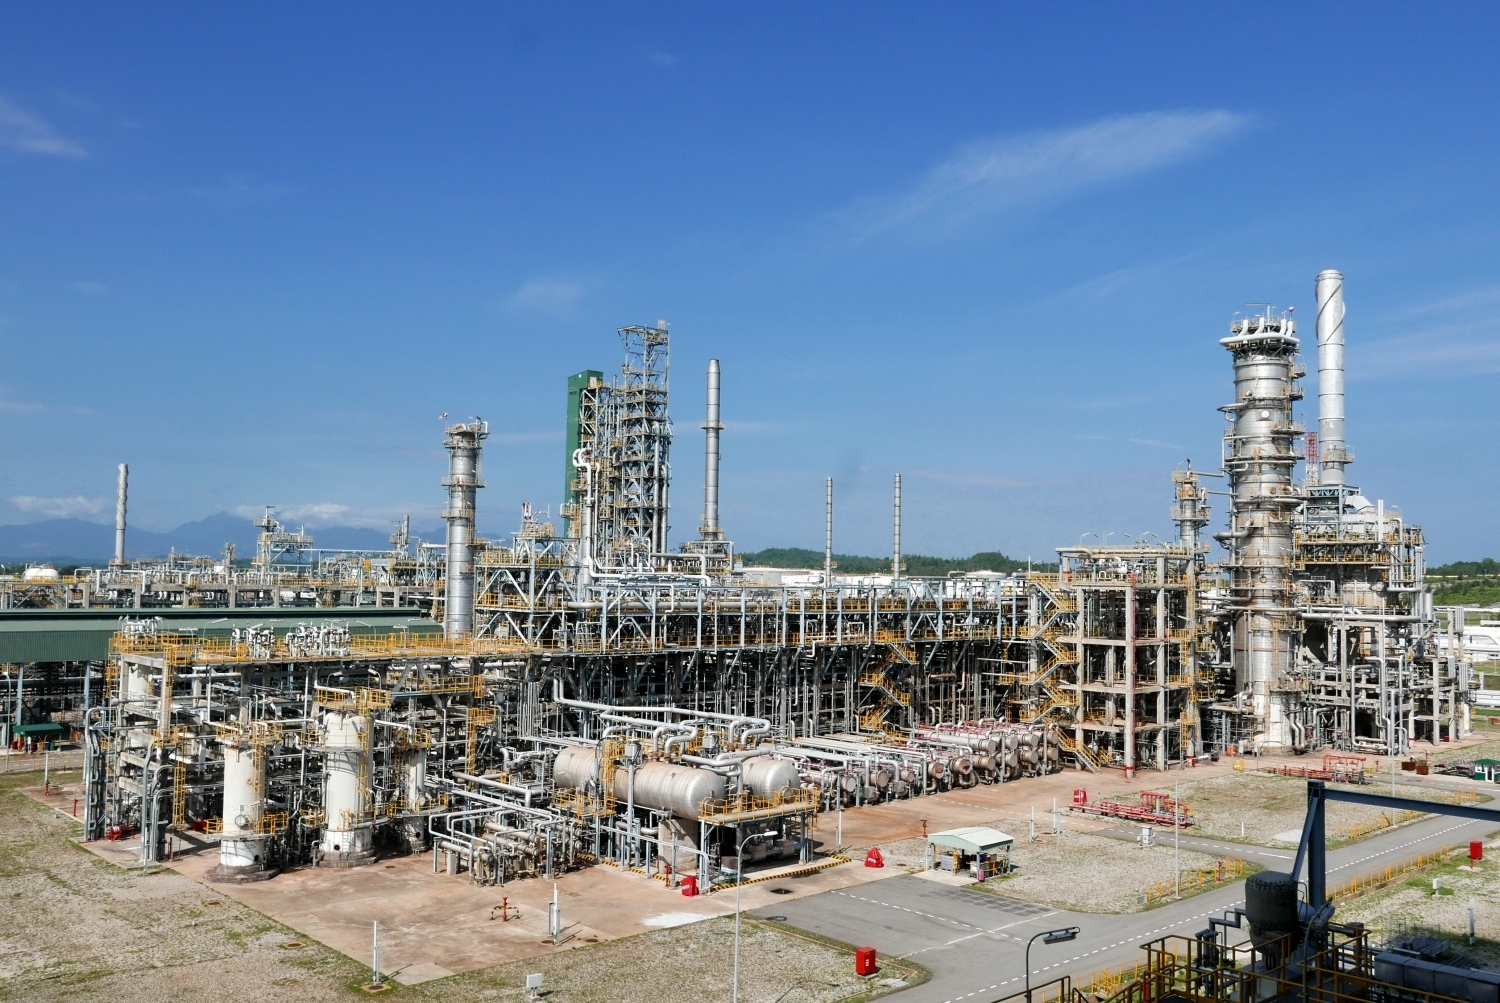 Nhà máy lọc dầu Dung Quốc tiếp tục vận hành an toàn, ổn định, với công suất cao, cung cấp khoảng hơn 30% nhu cầu xăng dầu trong nước, giúp đảm bảo an ninh năng lượng quốc gia